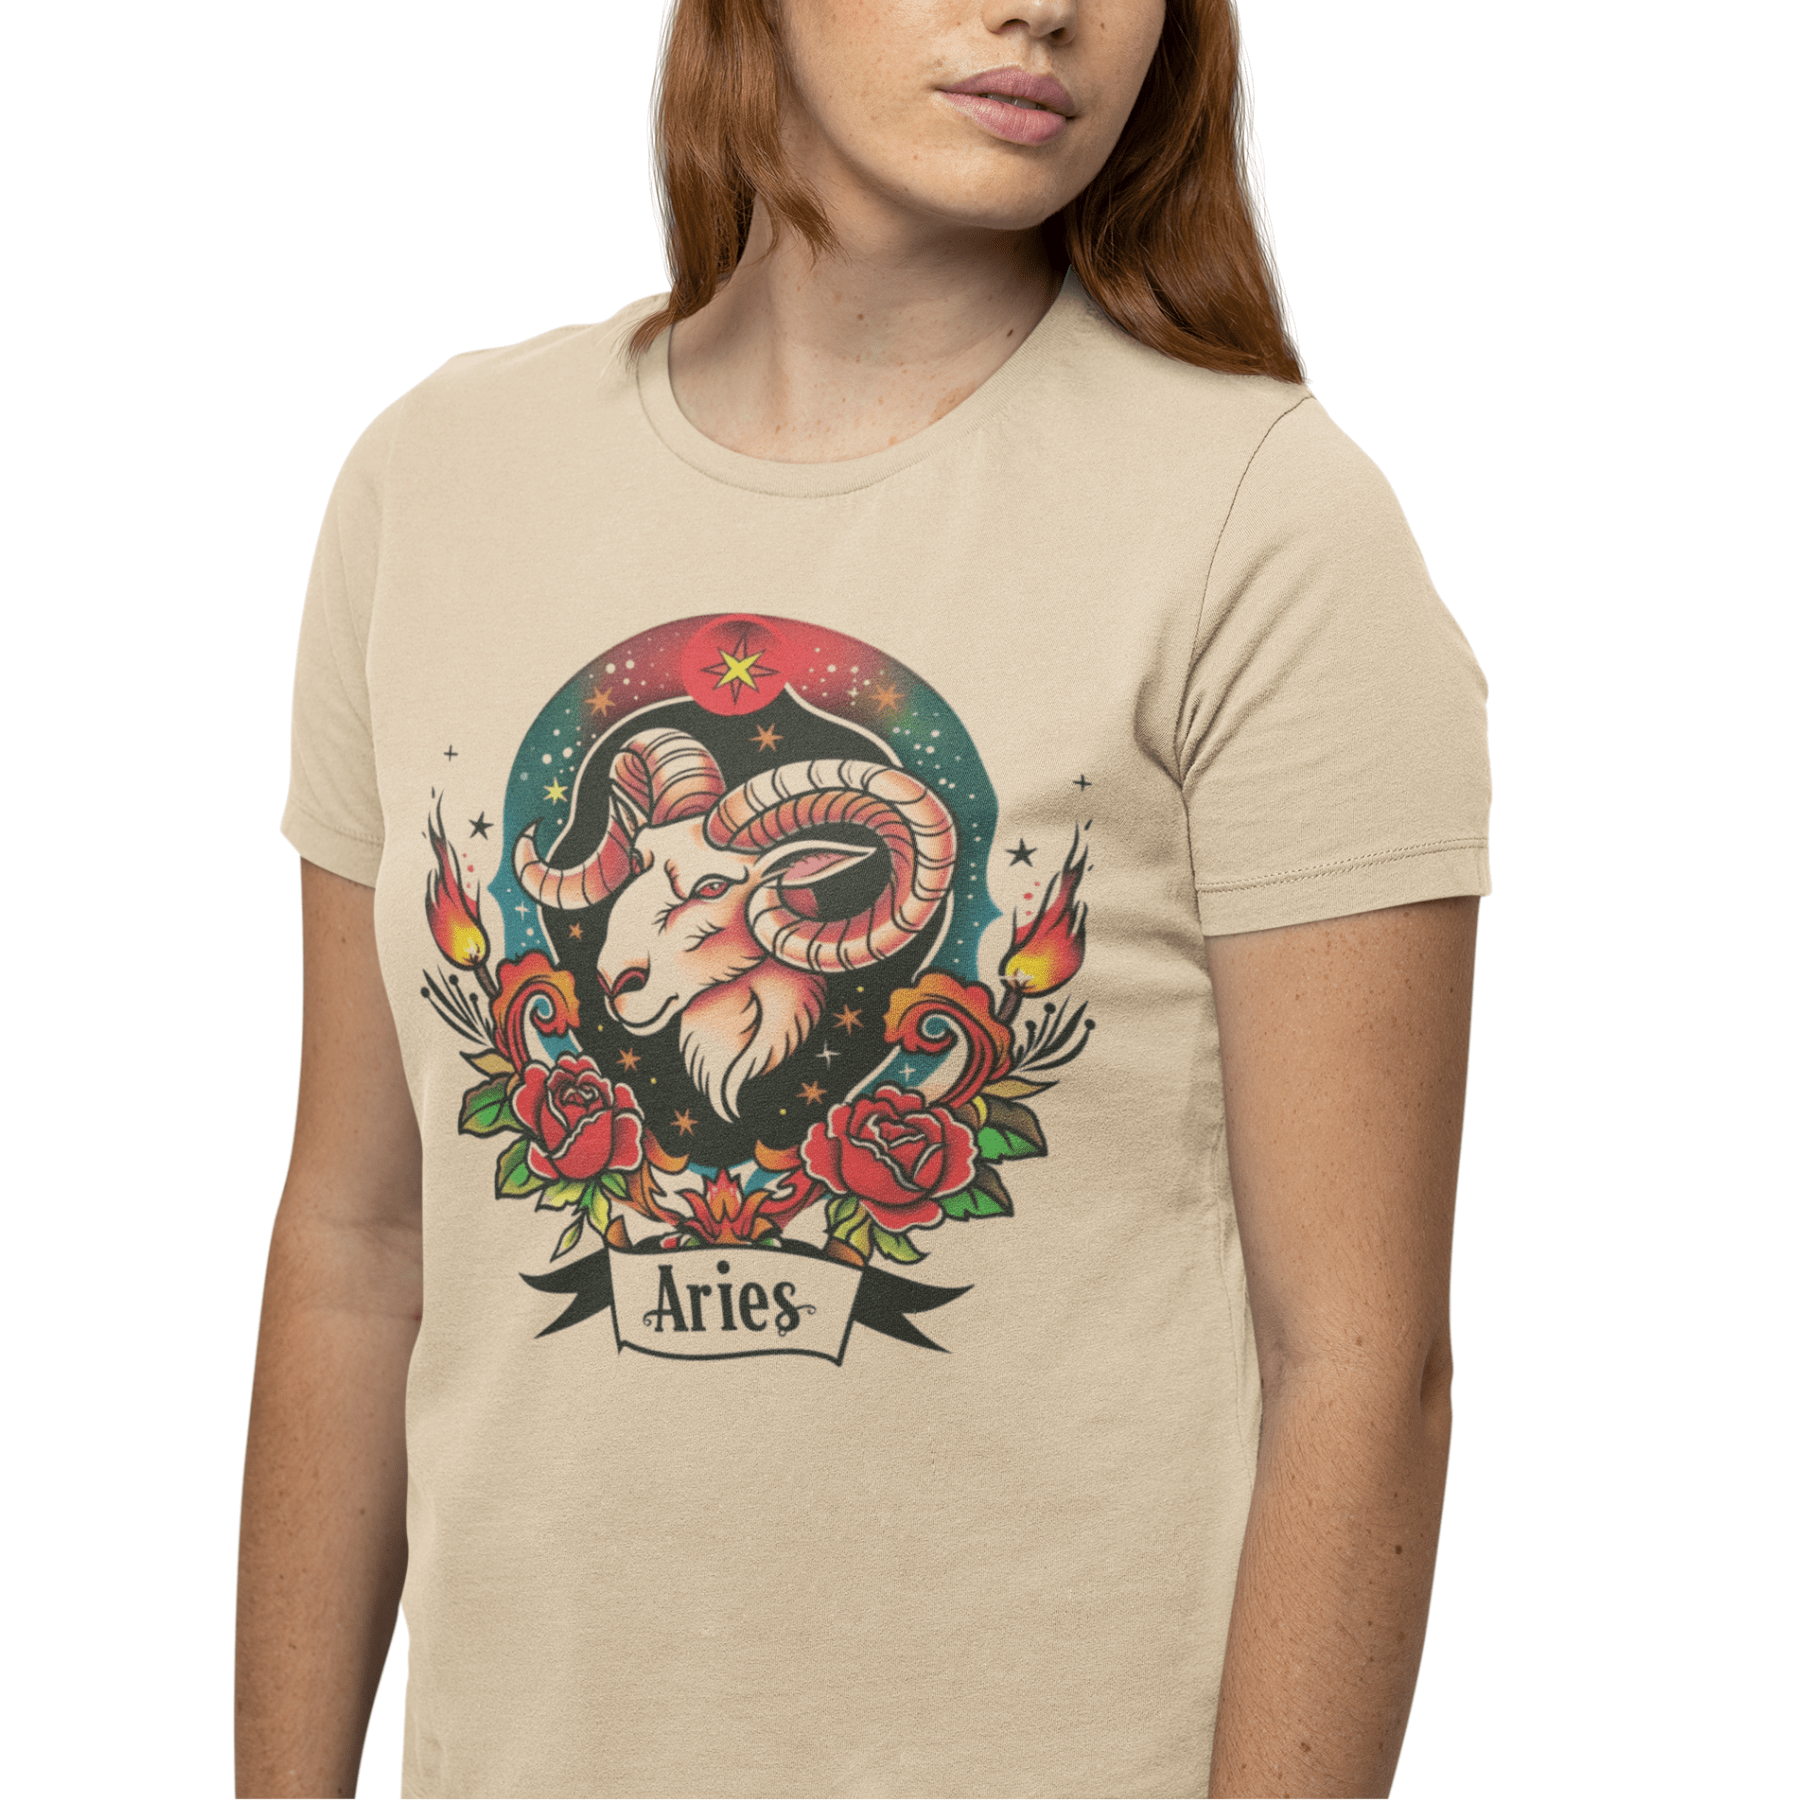 T-Shirt Fiery Aries Tattoo Art T-Shirt - Soft Cotton Zodiac-Inspired T-Shirt